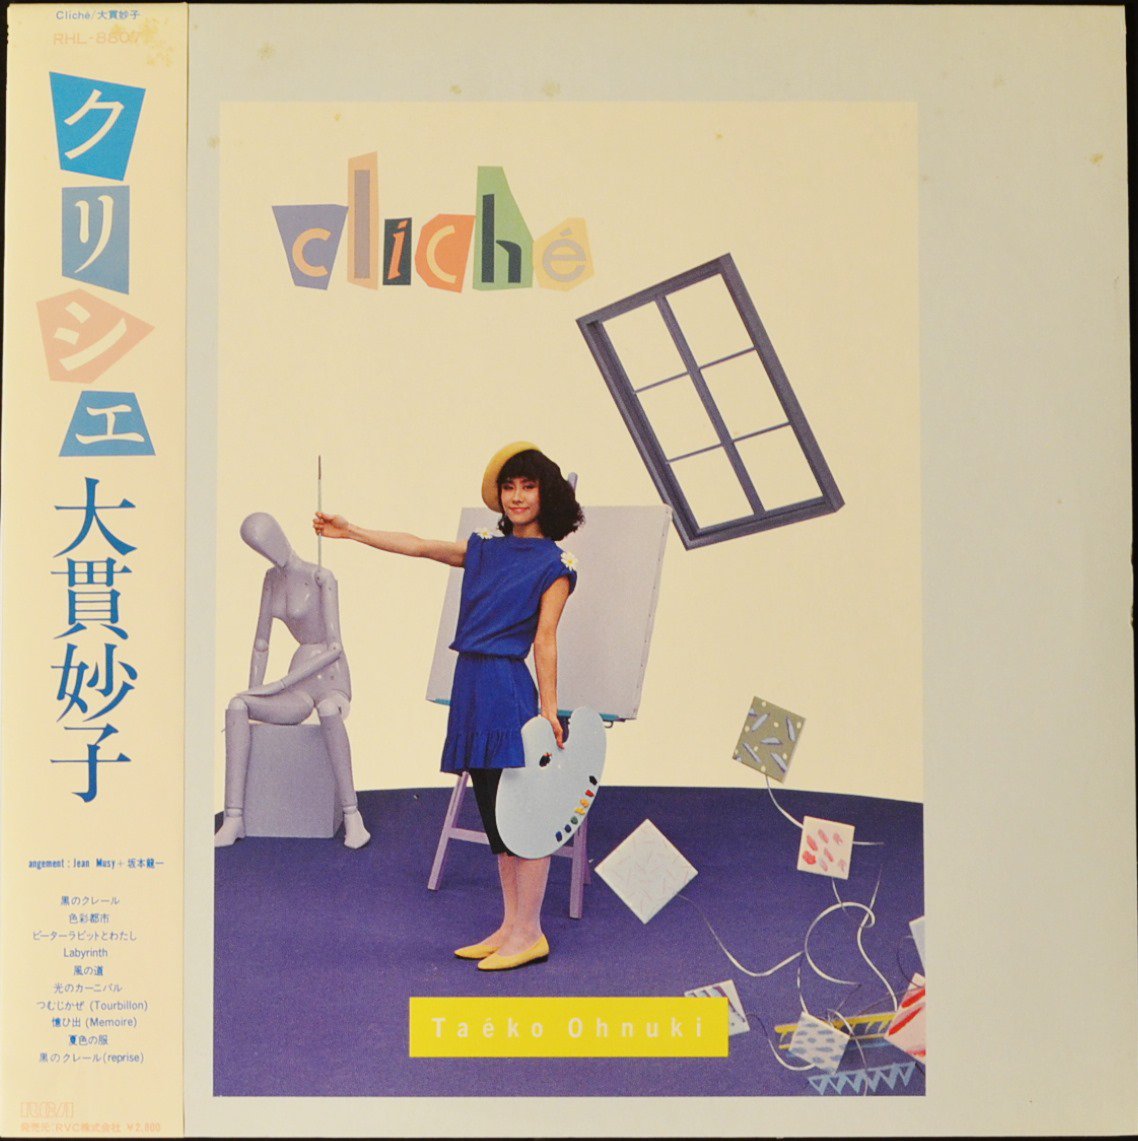 大貫妙子 TAEKO OHNUKI / クリシェ CLICHE (LP) - HIP TANK RECORDS